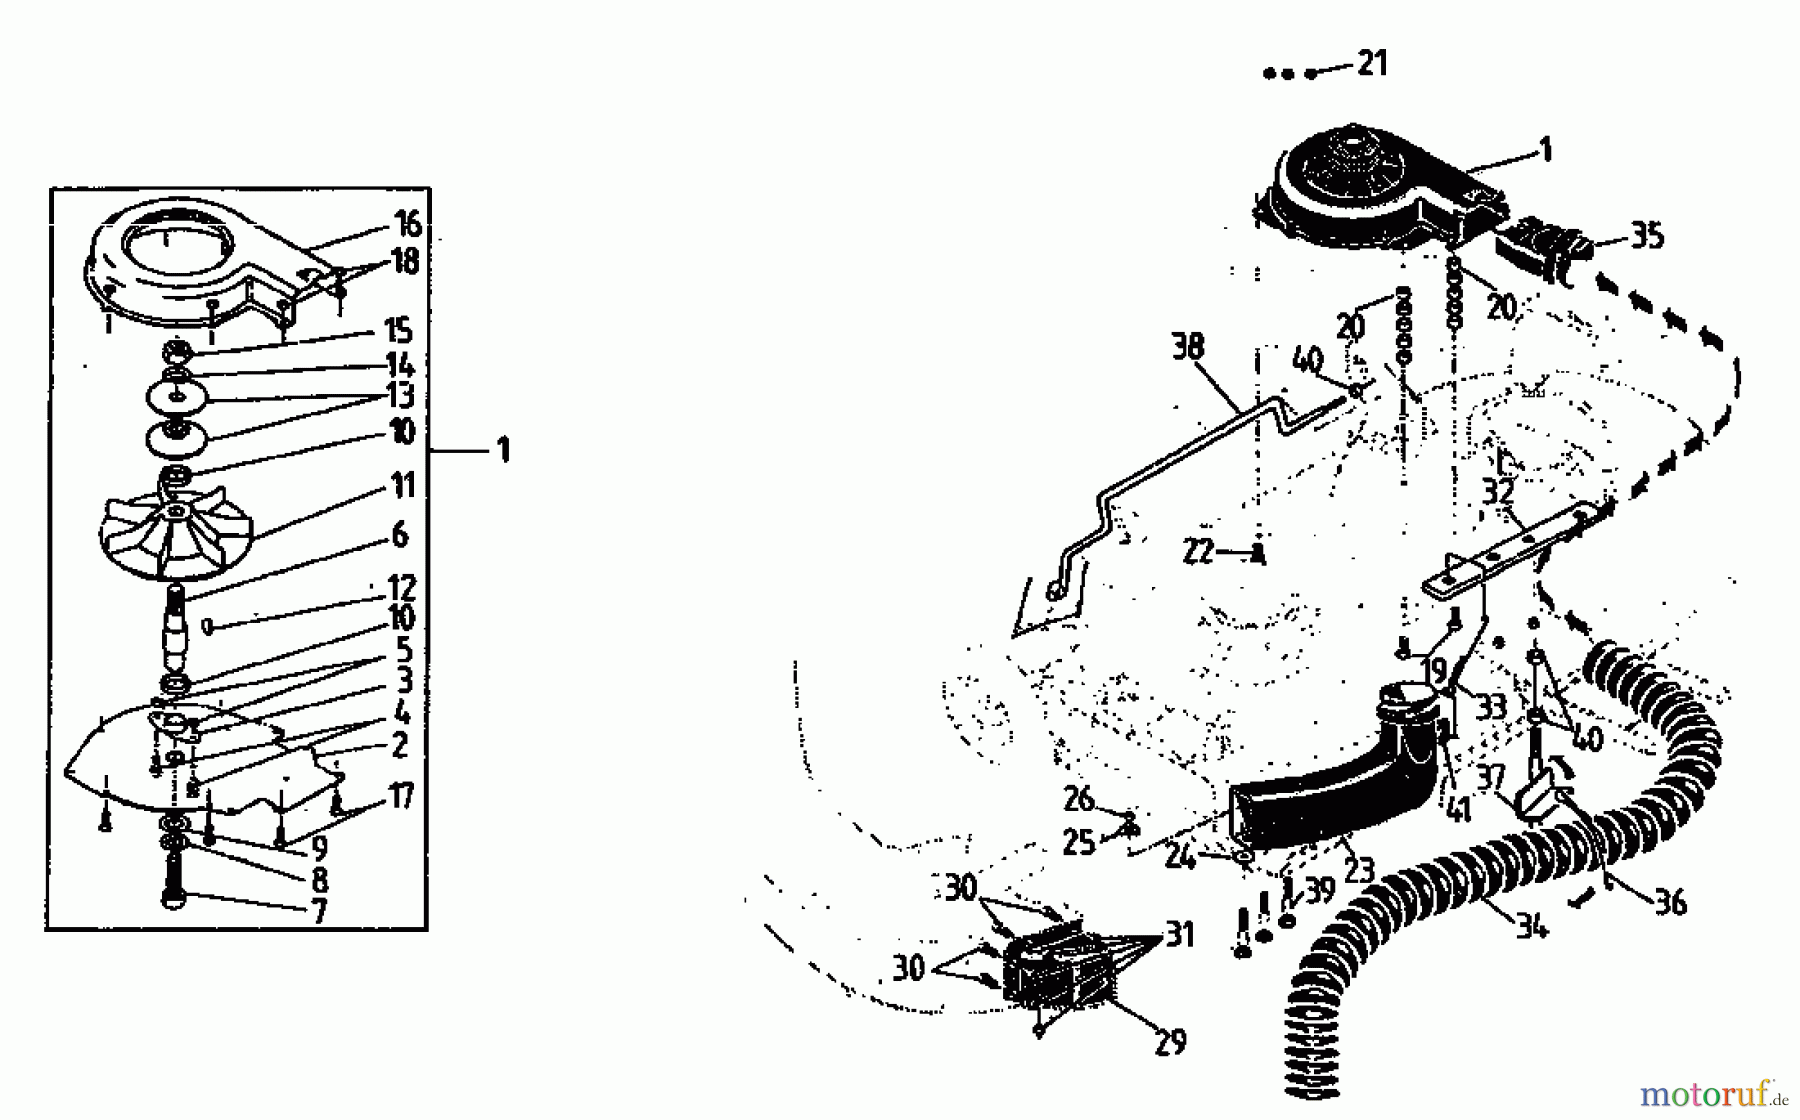  Gutbrod Rasentraktoren RSB 100-12 04015.02  (1991) Gebläsevorrichtung